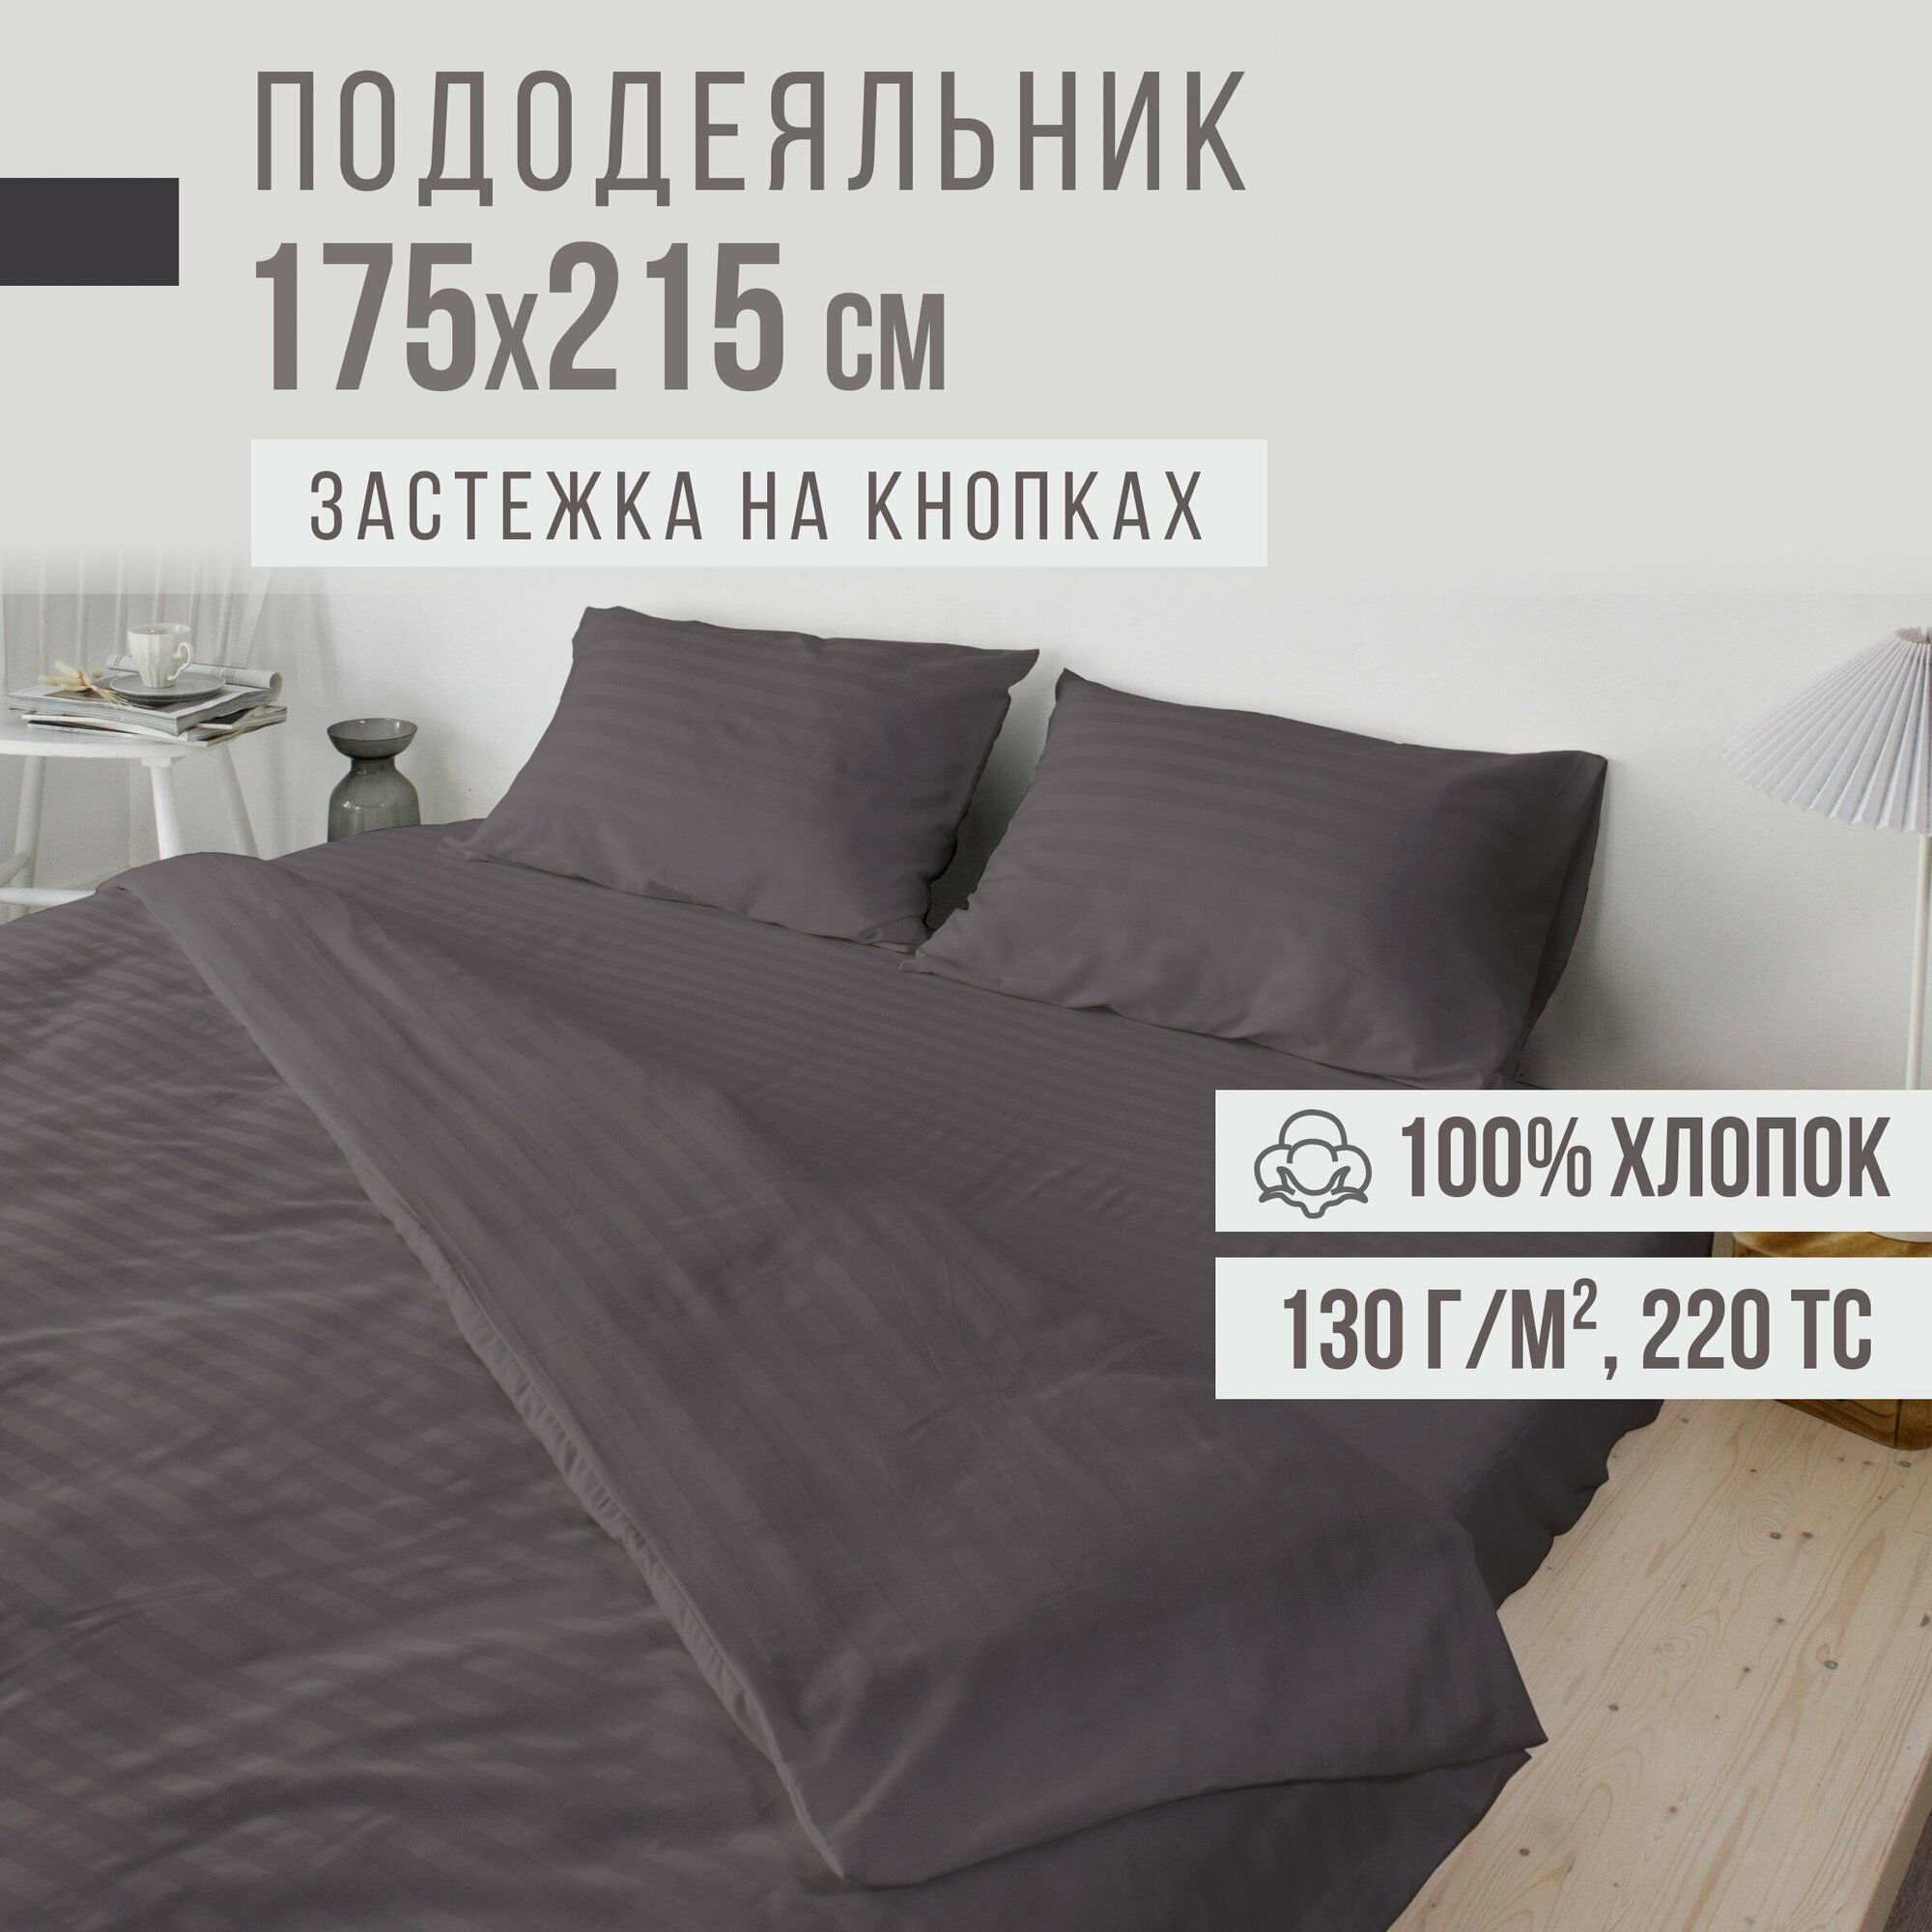 Пододеяльник, 2 спальный, страйп-сатин VENTURA LIFE 175х215 см, Темно-серый